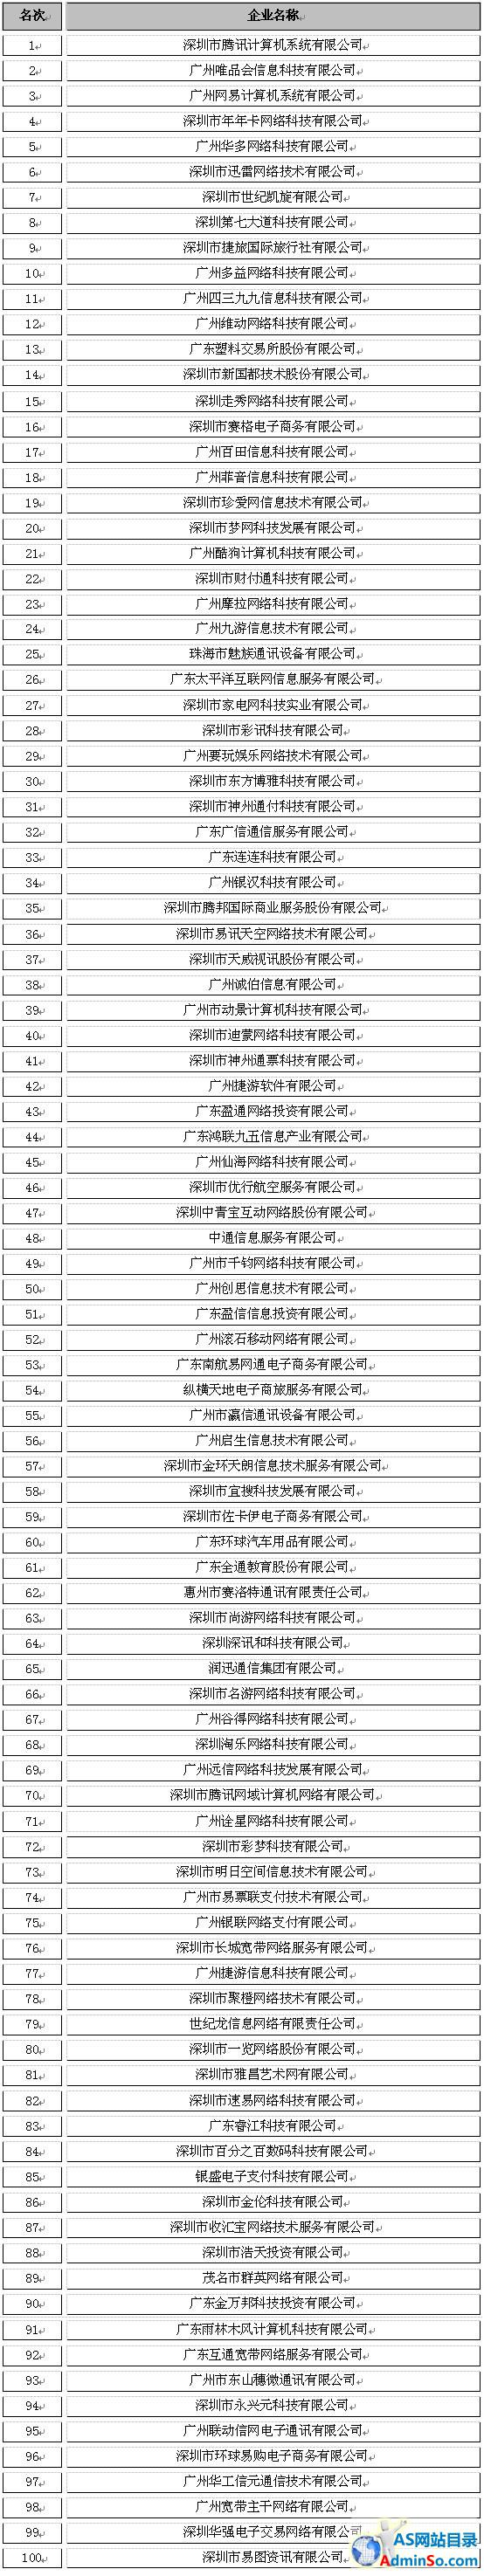 广东省2013年度增值电信业务收入前100名企业名单公告